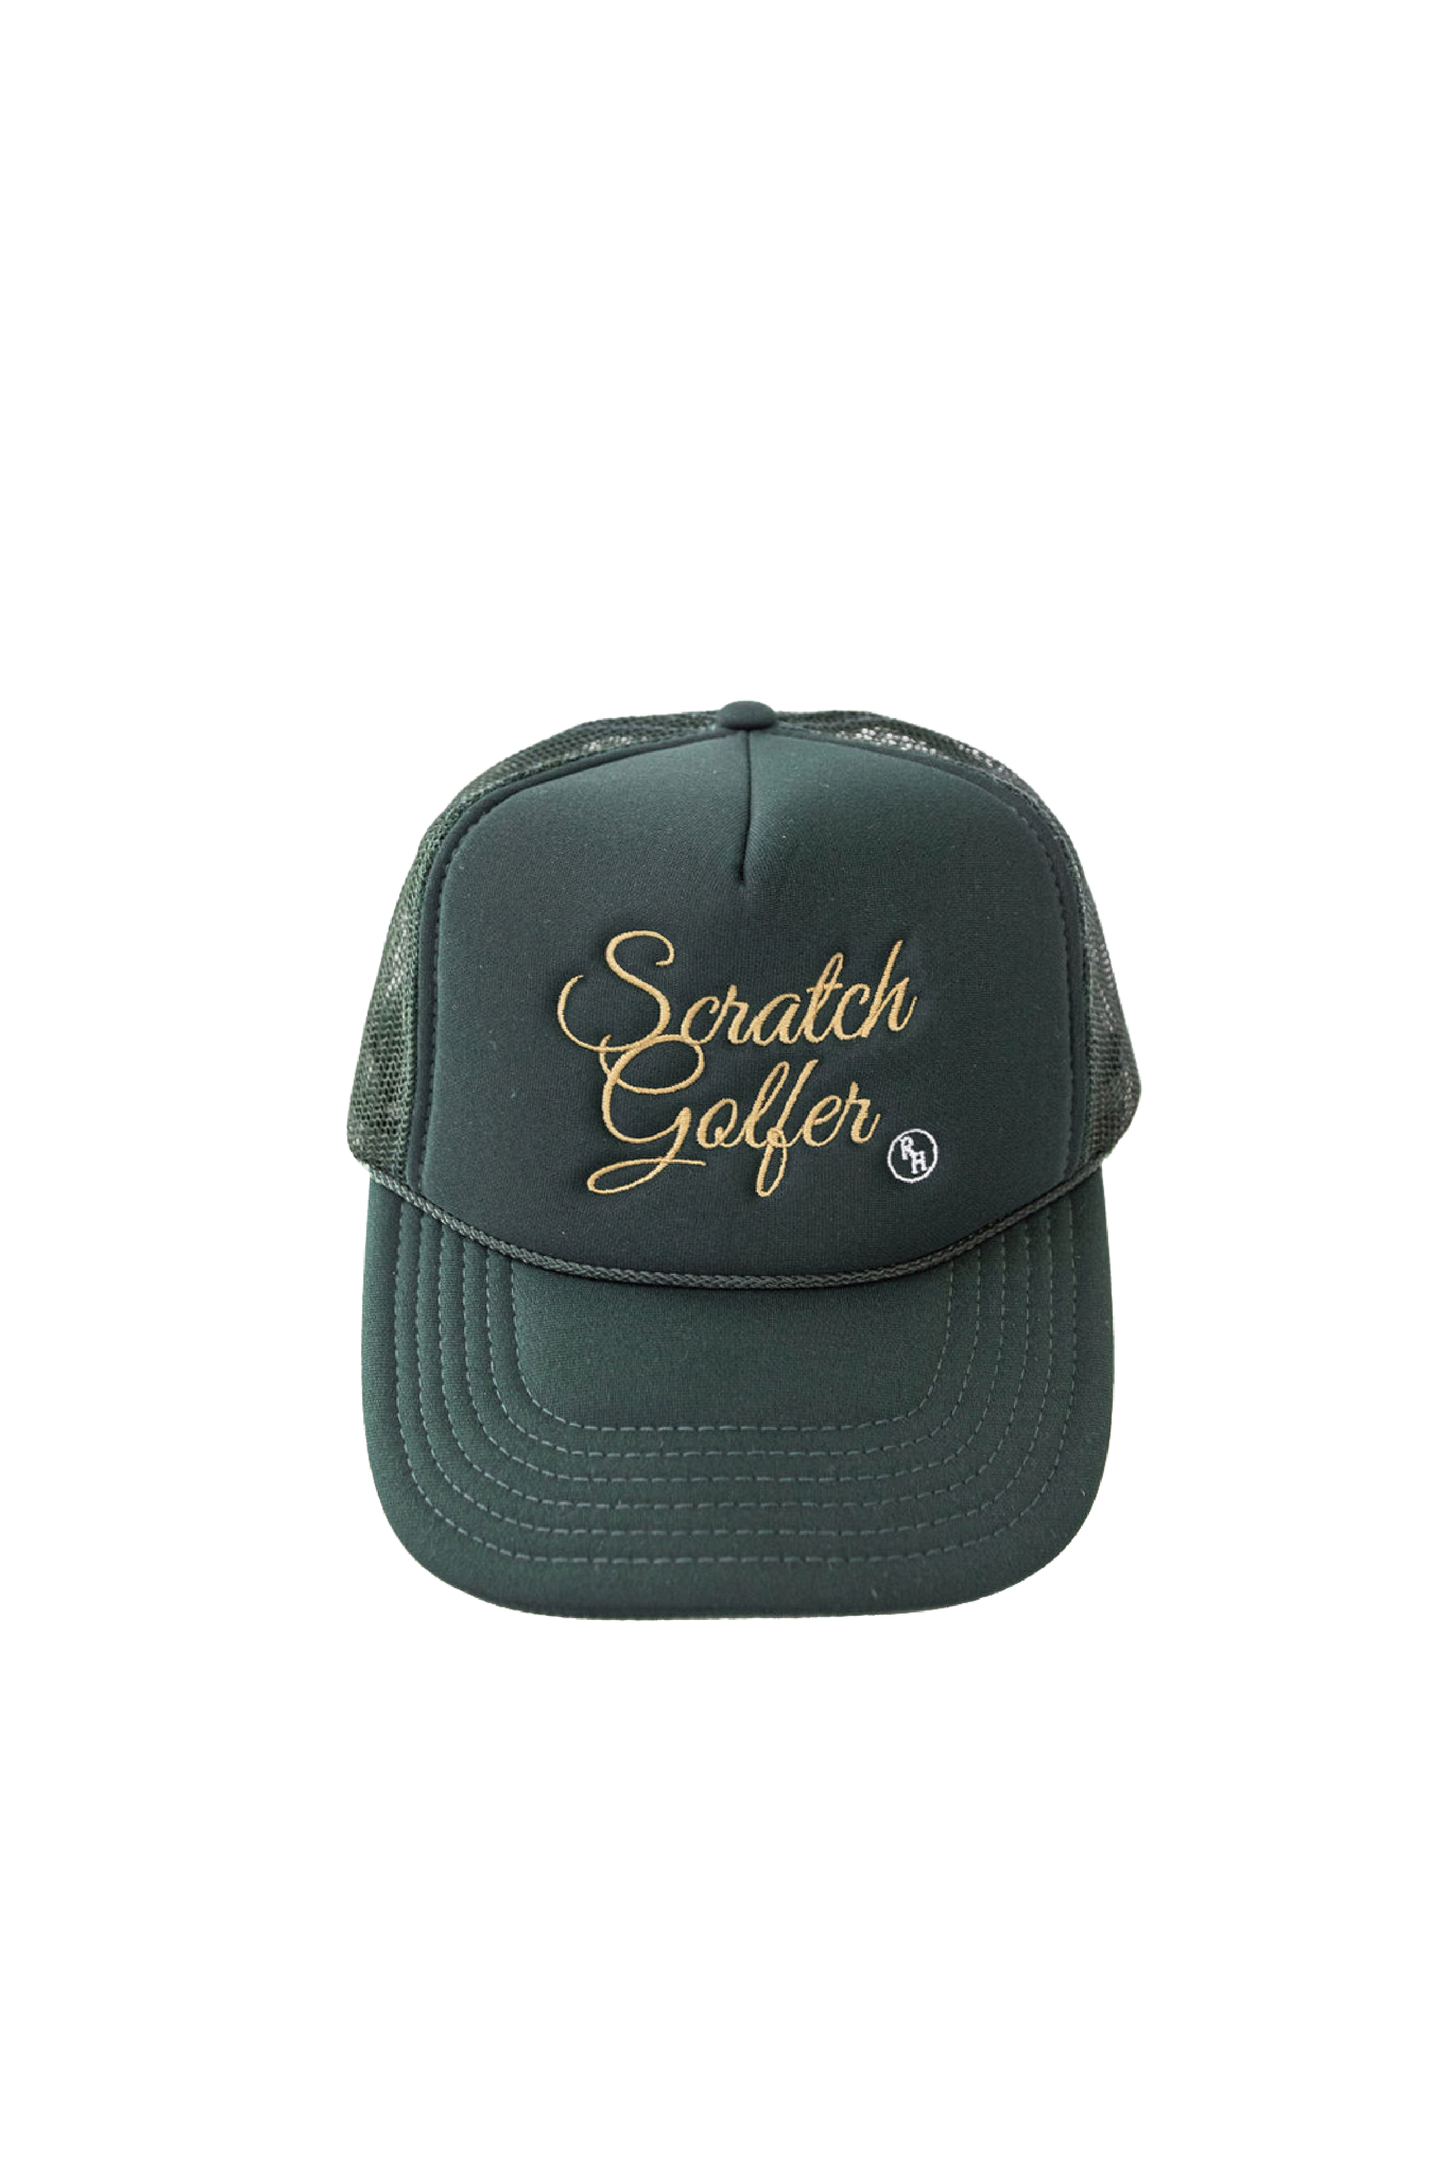 Scratch Trucker Hat in Green